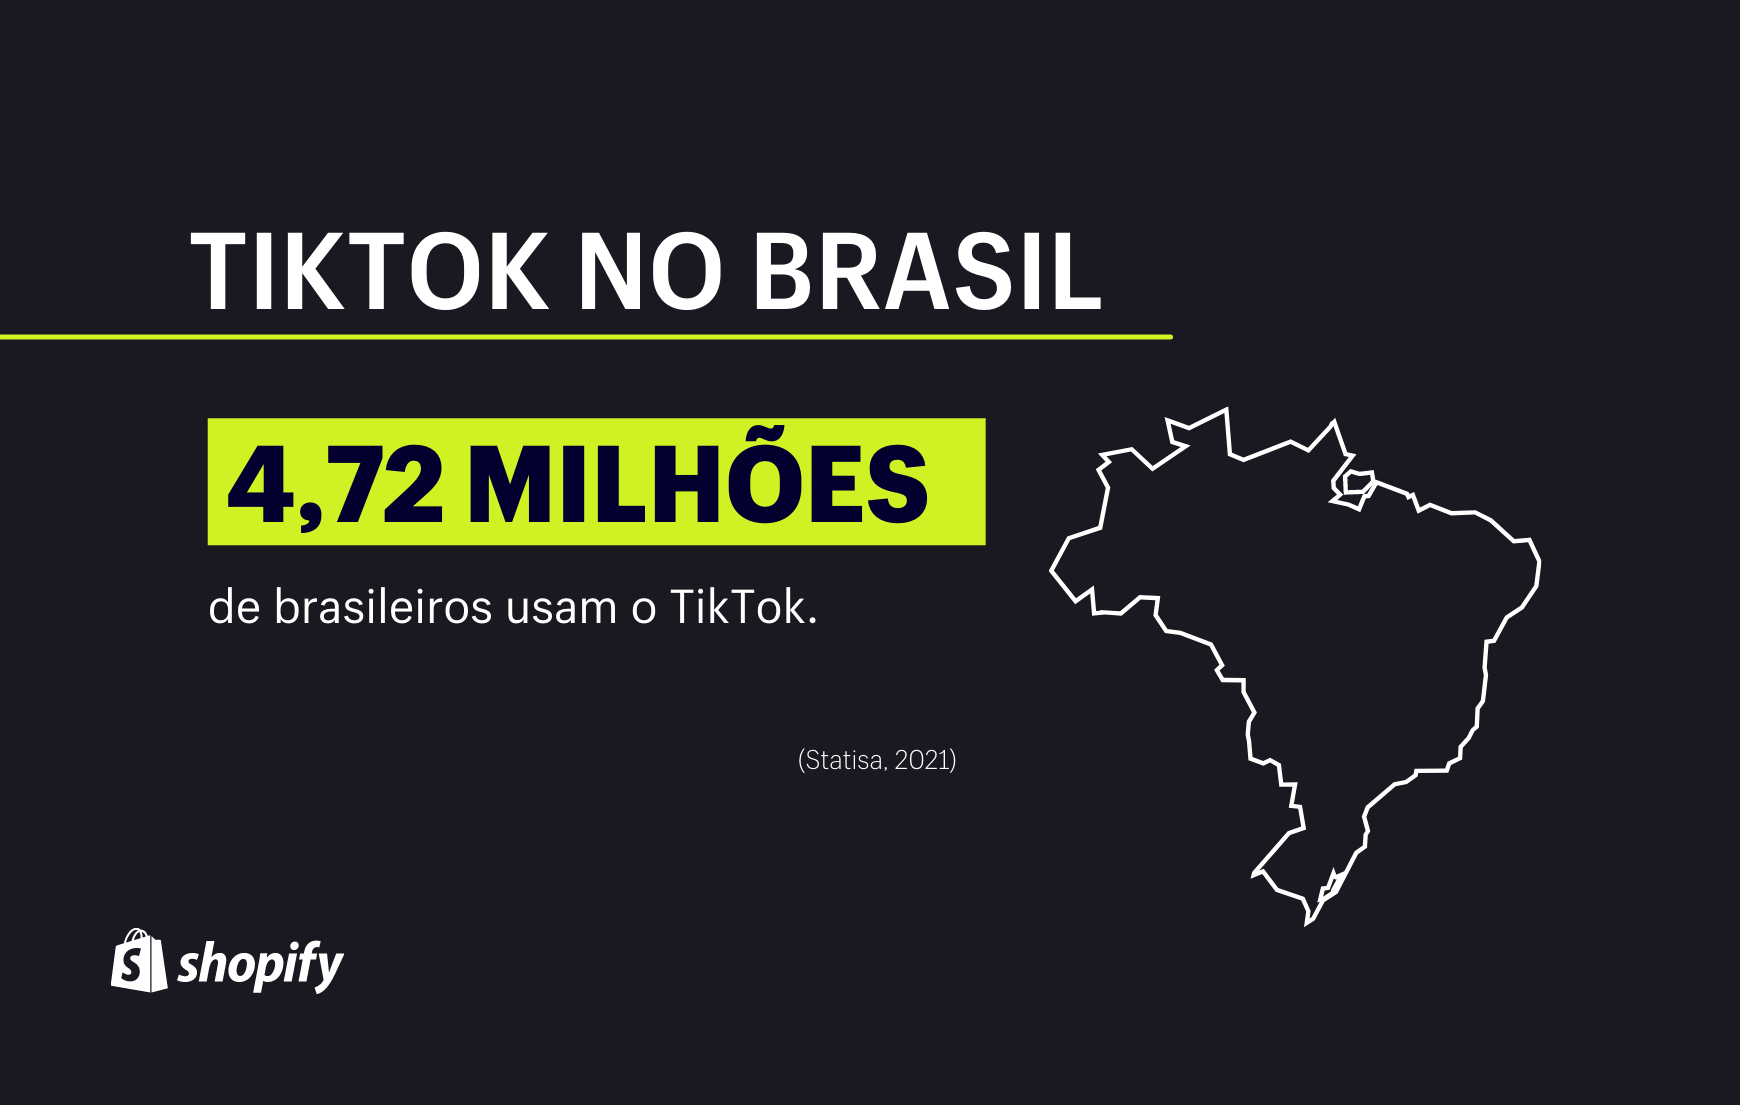 Infográfico com fundo preto. Em verde e branco, no primeiro plano, há a informação de que o Brasil tem 4,72 milhões de usuários no TikTok.